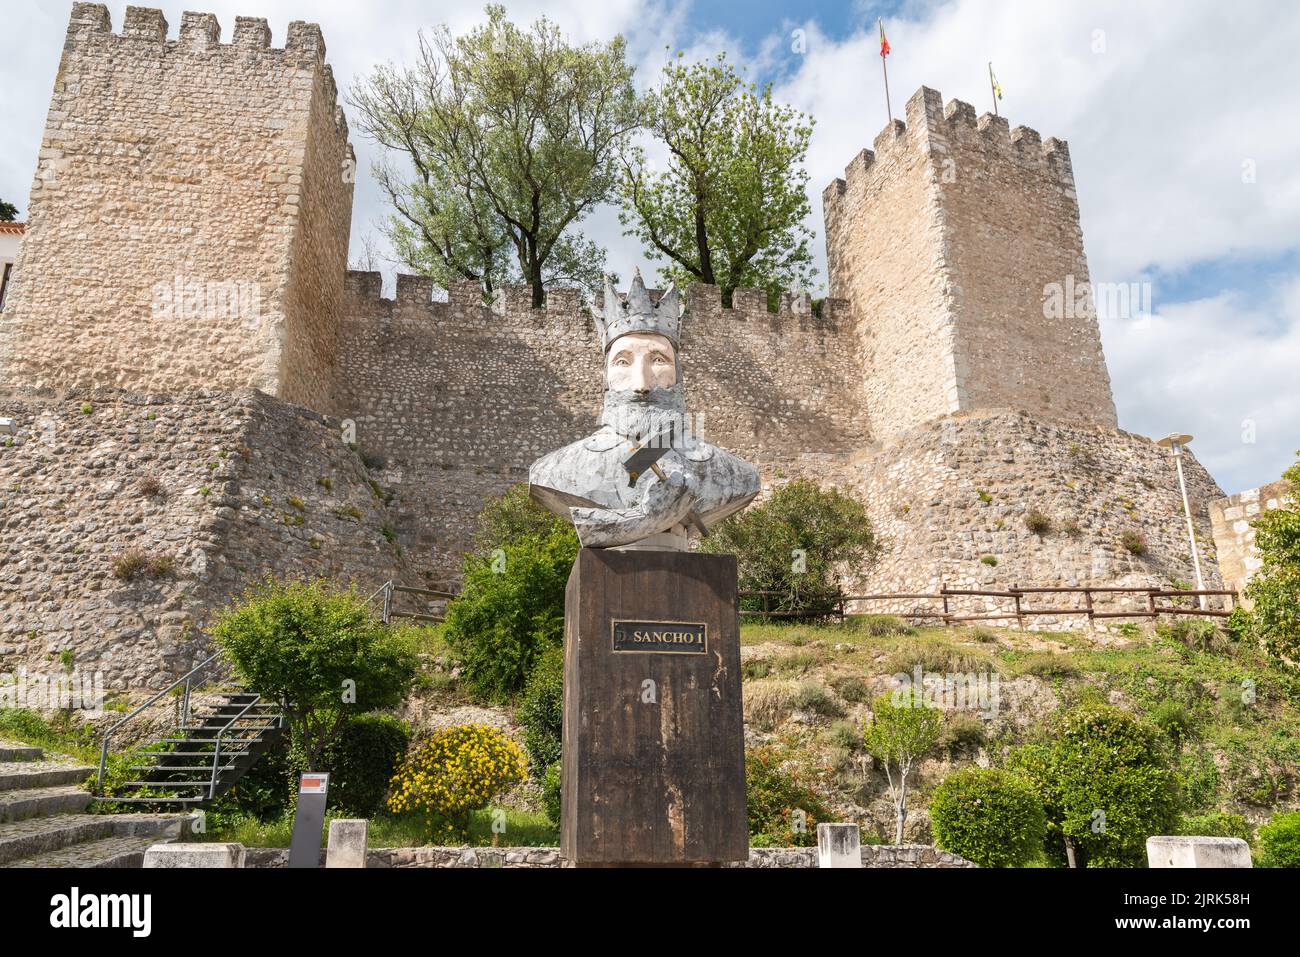 La statue de D. Sancho I en face du château de Torres Novas à Sines, Portugal. Banque D'Images